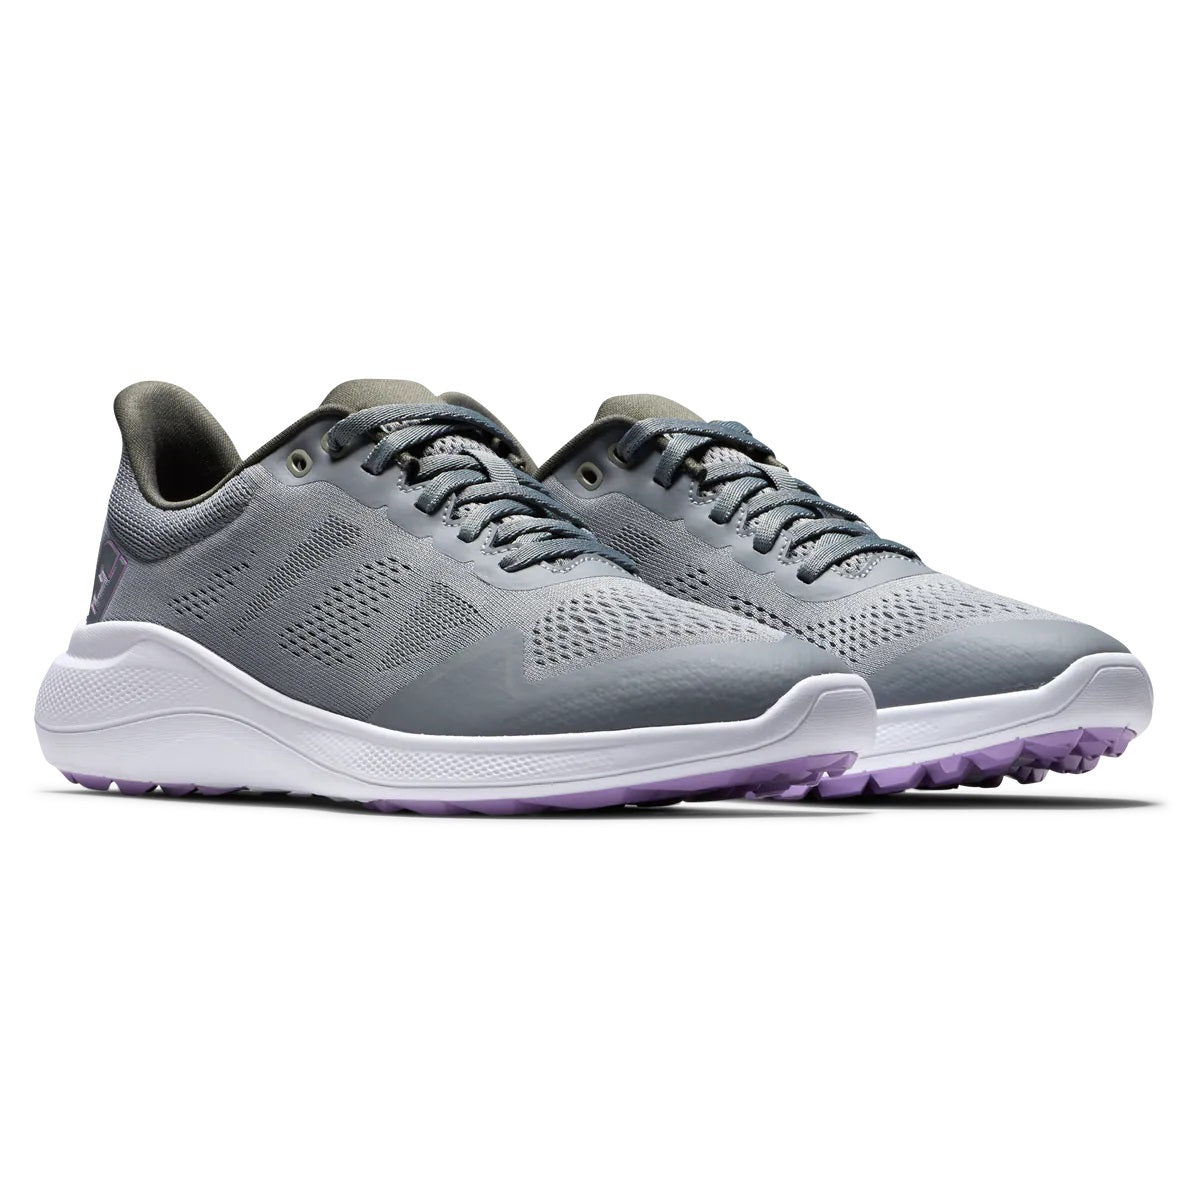 FootJoy Women's Flex Golf Shoes Grey/Purple 95766 (Previous Season Style)